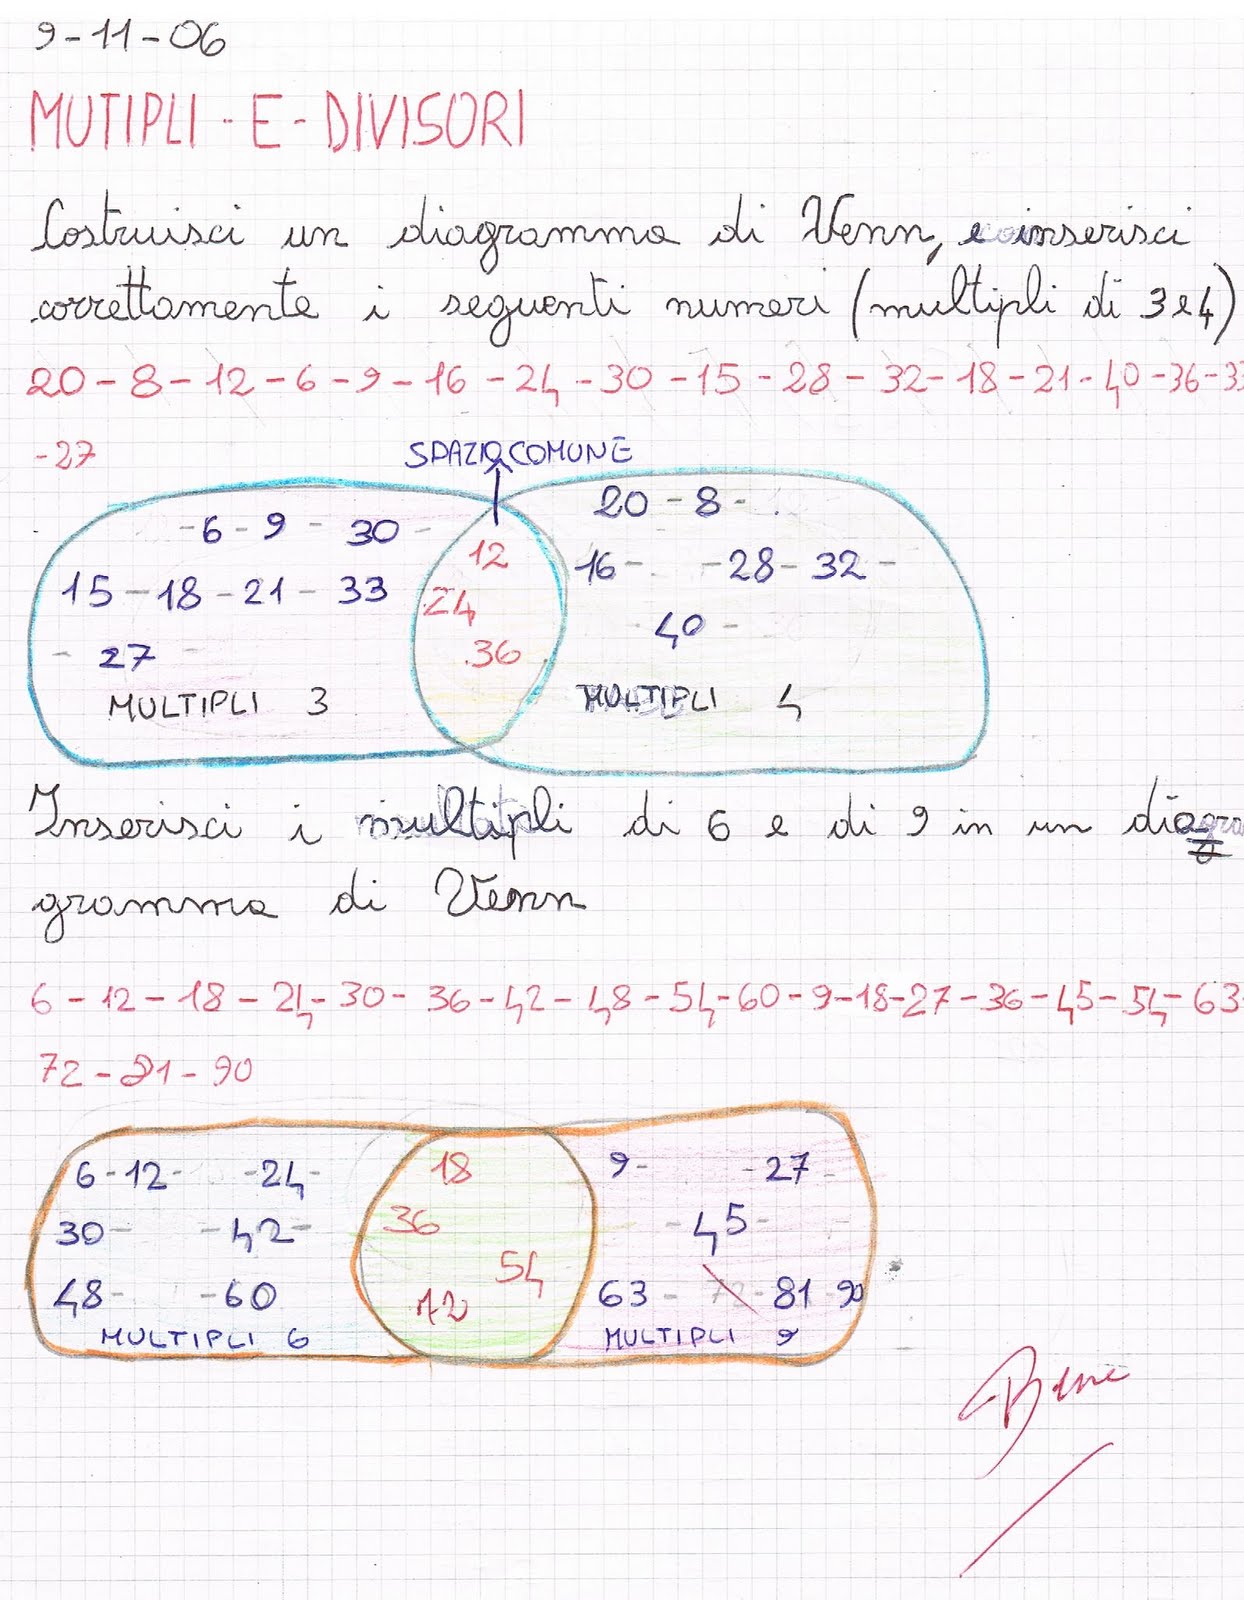 Multipli E Divisori Diagramma Di Venn